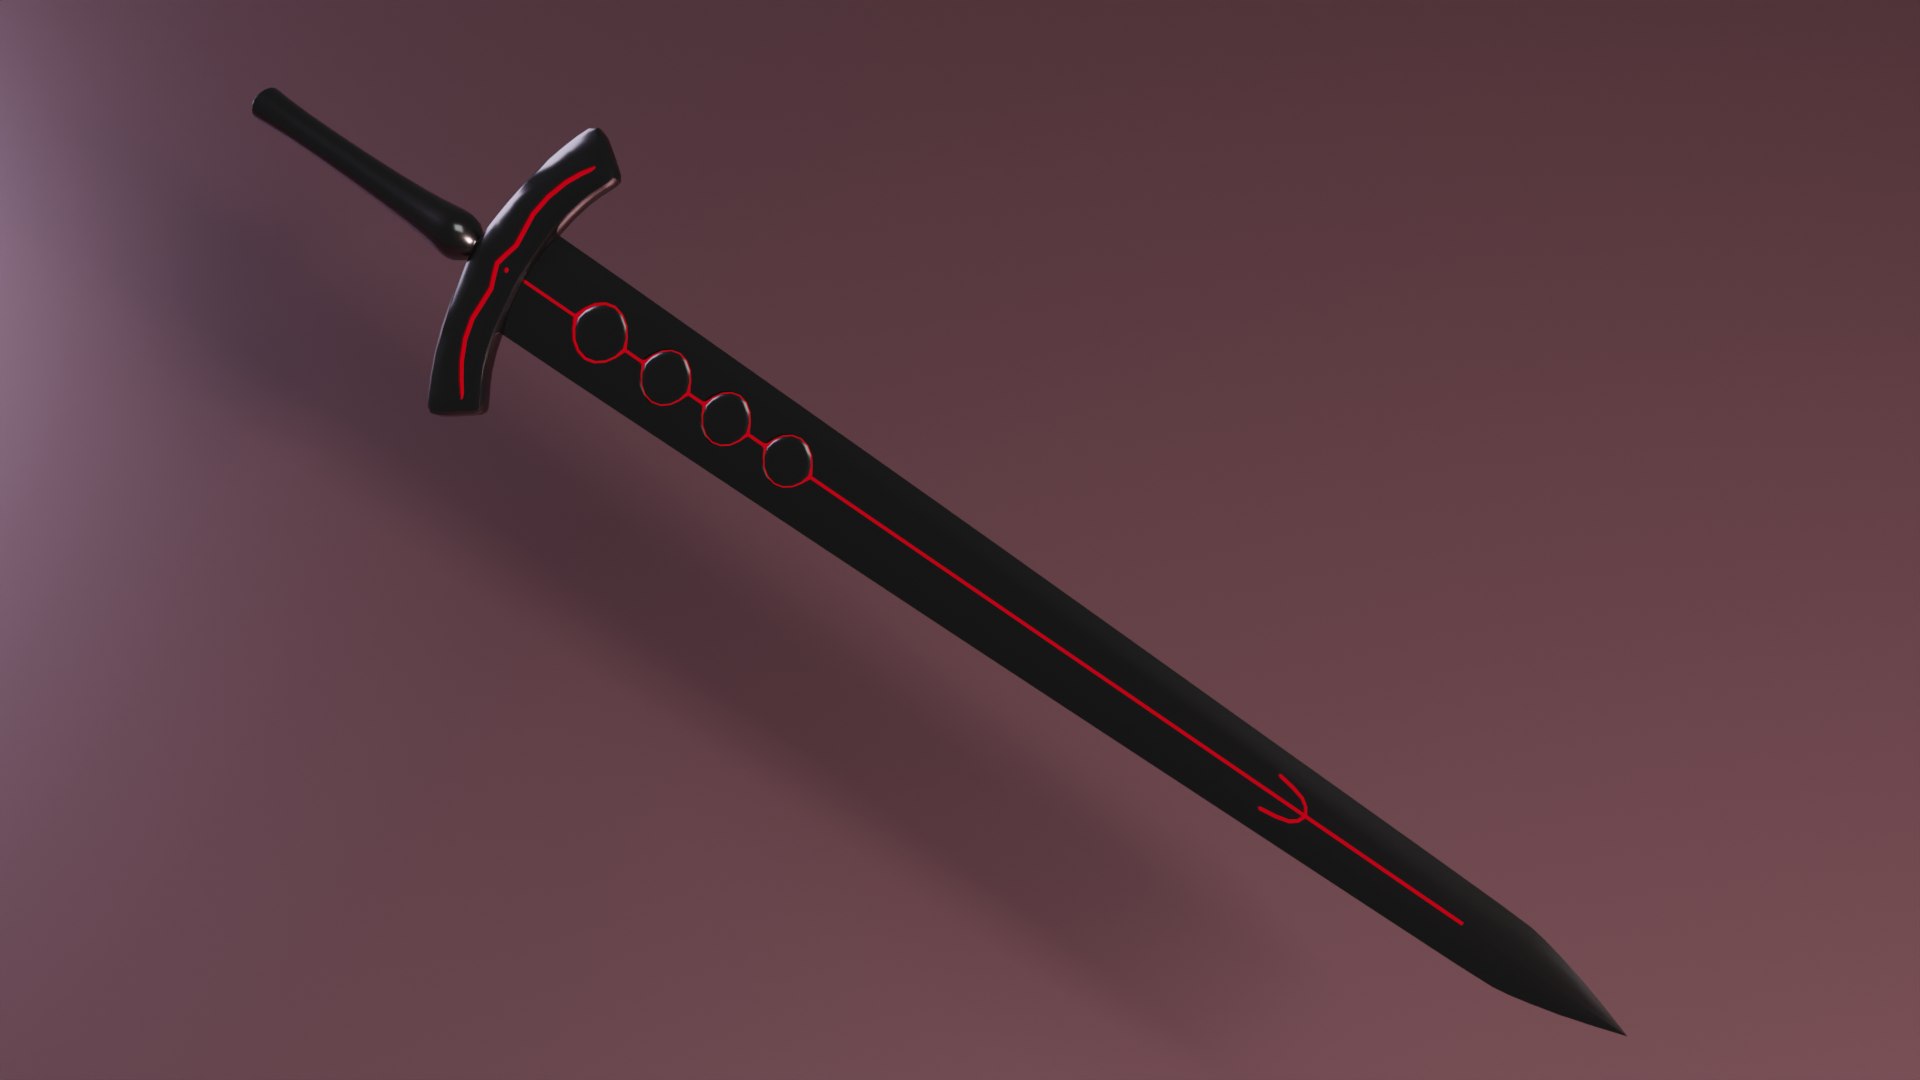 black sword yoru Free 3D Model in Heavy Weapon 3DExport